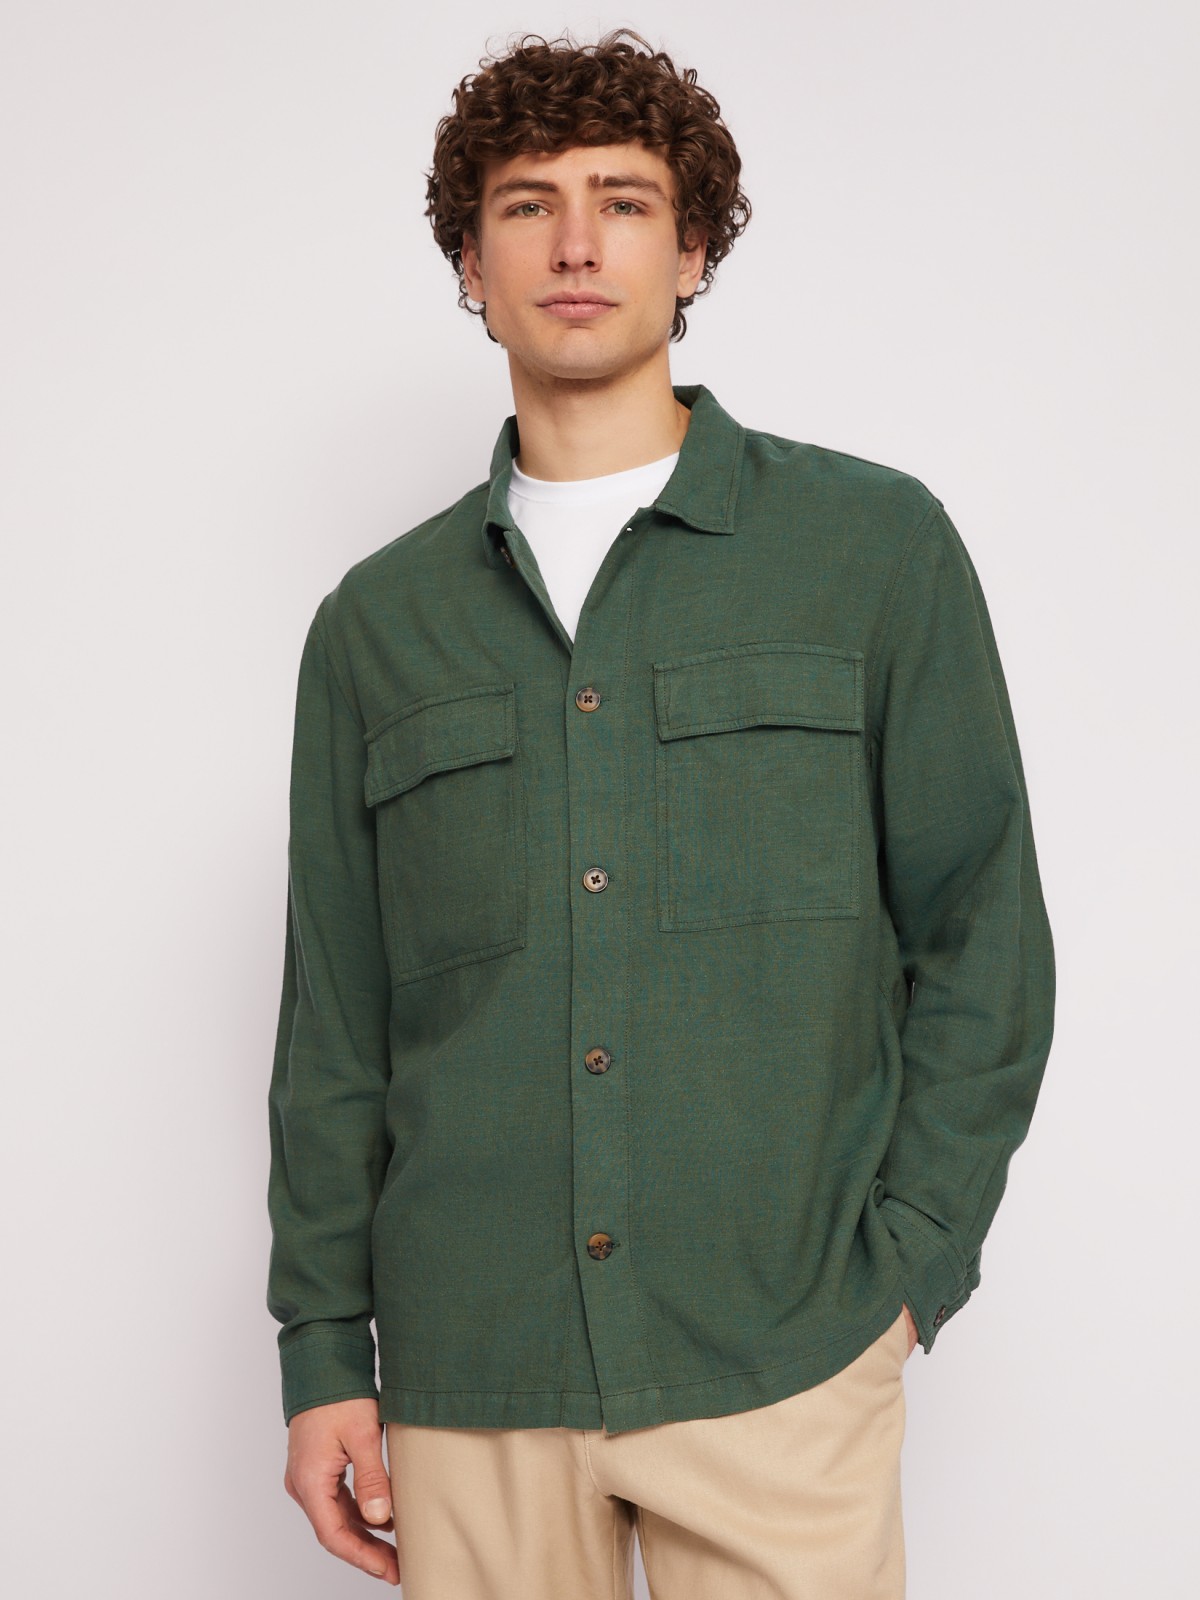 Куртка-рубашка из льна и вискозы zolla 01421214R073, цвет темно-зеленый, размер L - фото 3